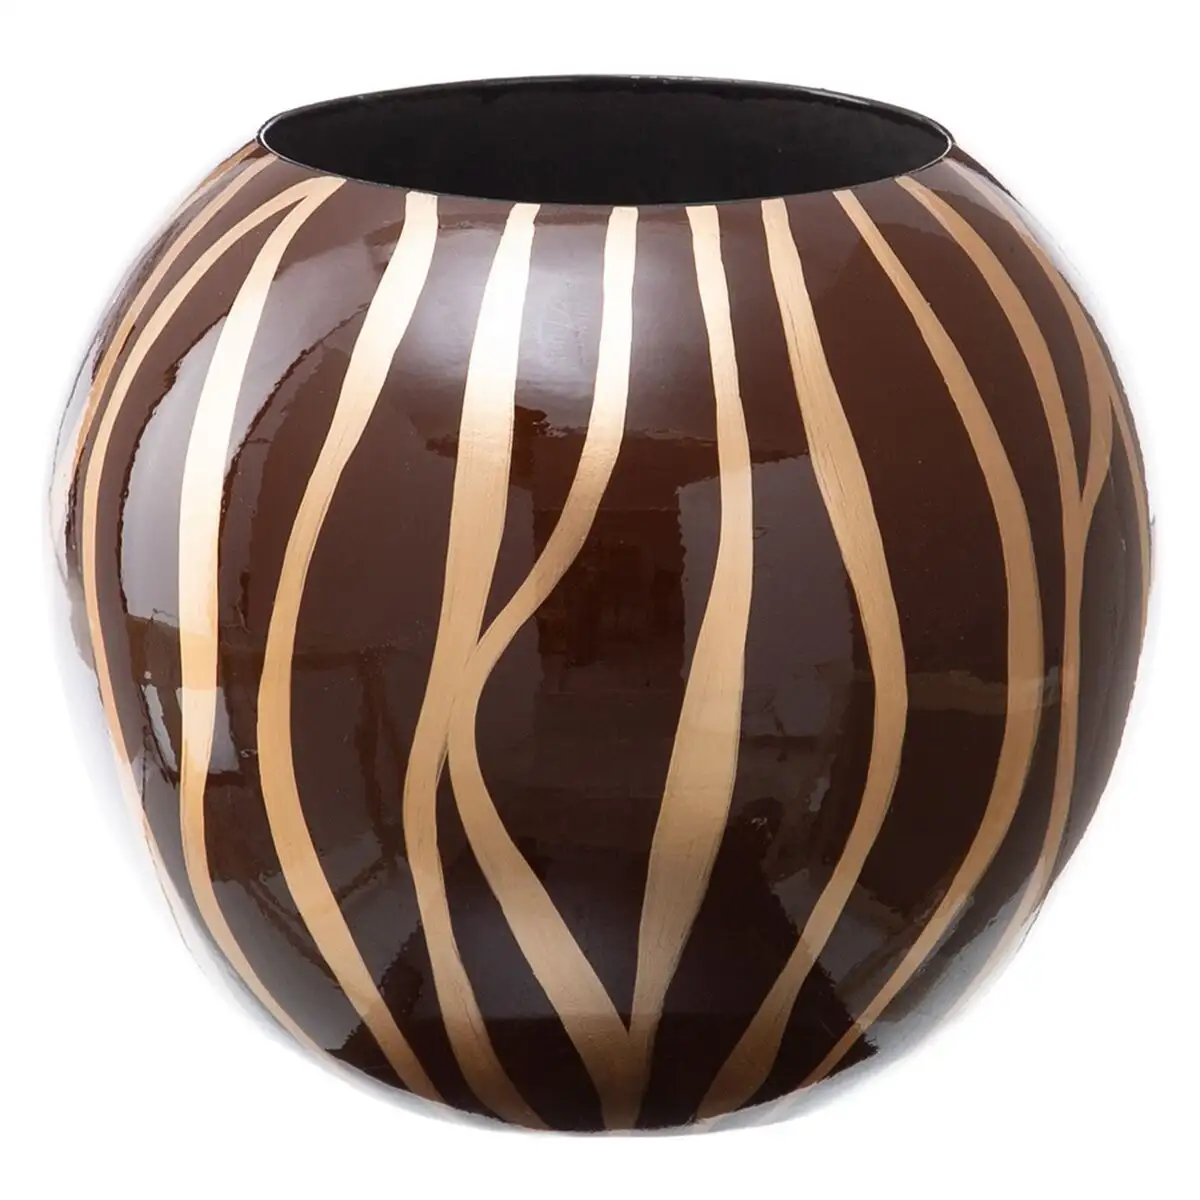 Vase 27 x 27 x 23 cm zebre ceramique dore marron_5146. DIAYTAR SENEGAL - Votre Oasis de Shopping en Ligne. Explorez notre boutique et découvrez des produits qui ajoutent une touche de magie à votre quotidien.